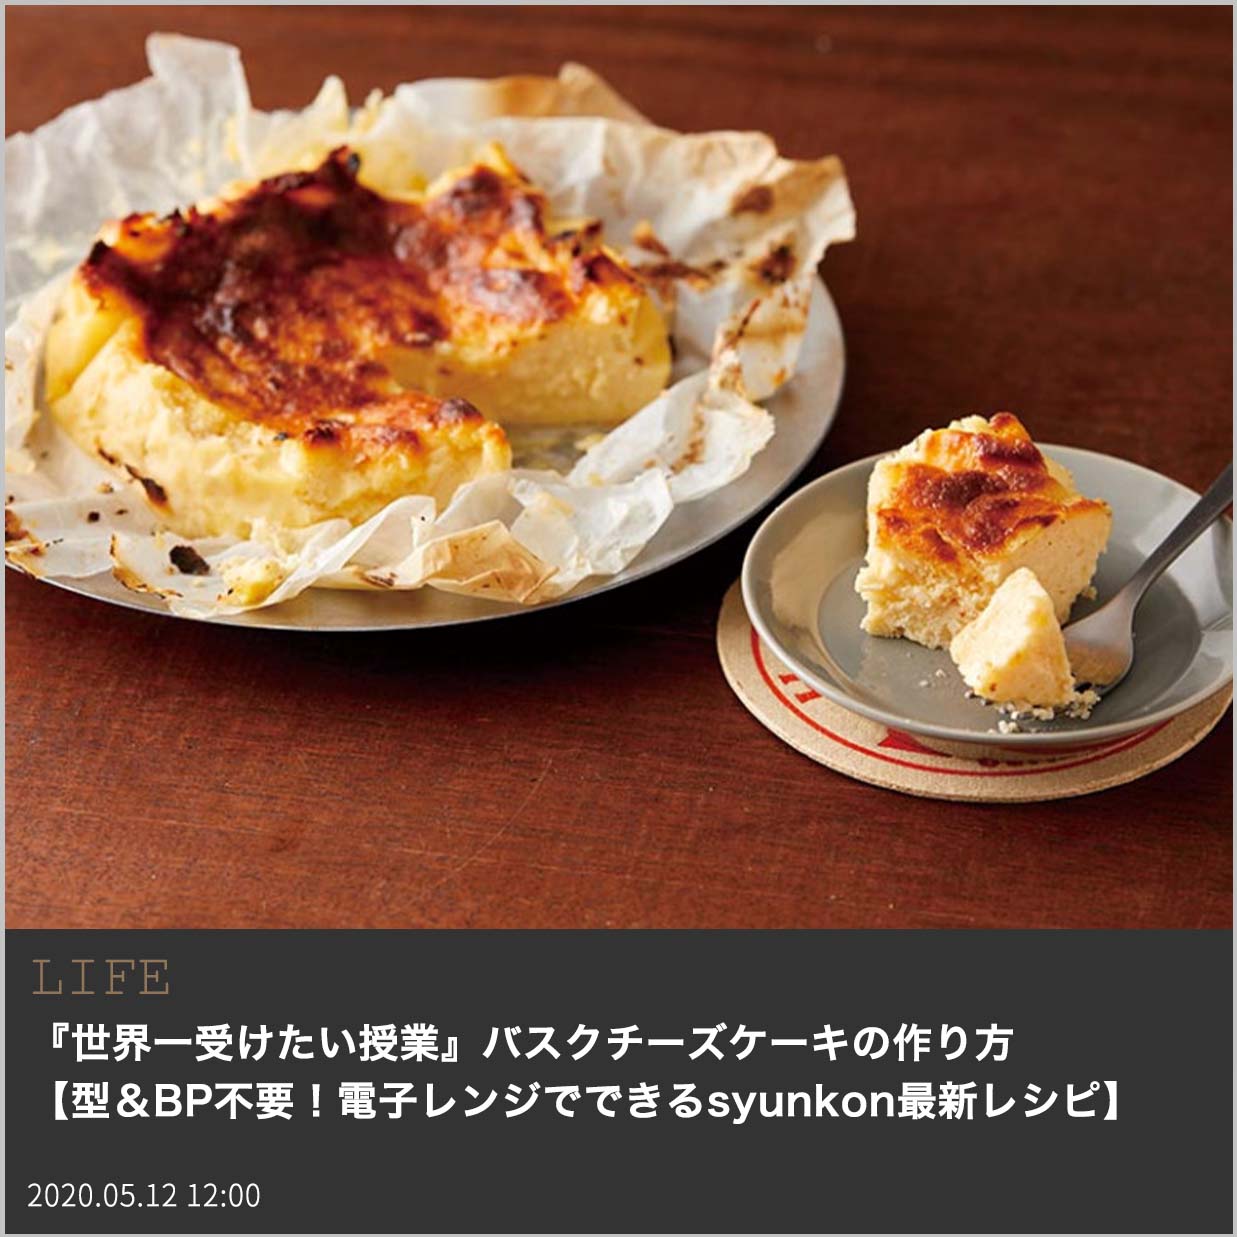 山本ゆりが教えるバスクチーズケーキの作り方 世界一受けたい授業 でも紹介 型 Bp不要 電子レンジでできるsyunkon最新レシピ Fashion Box